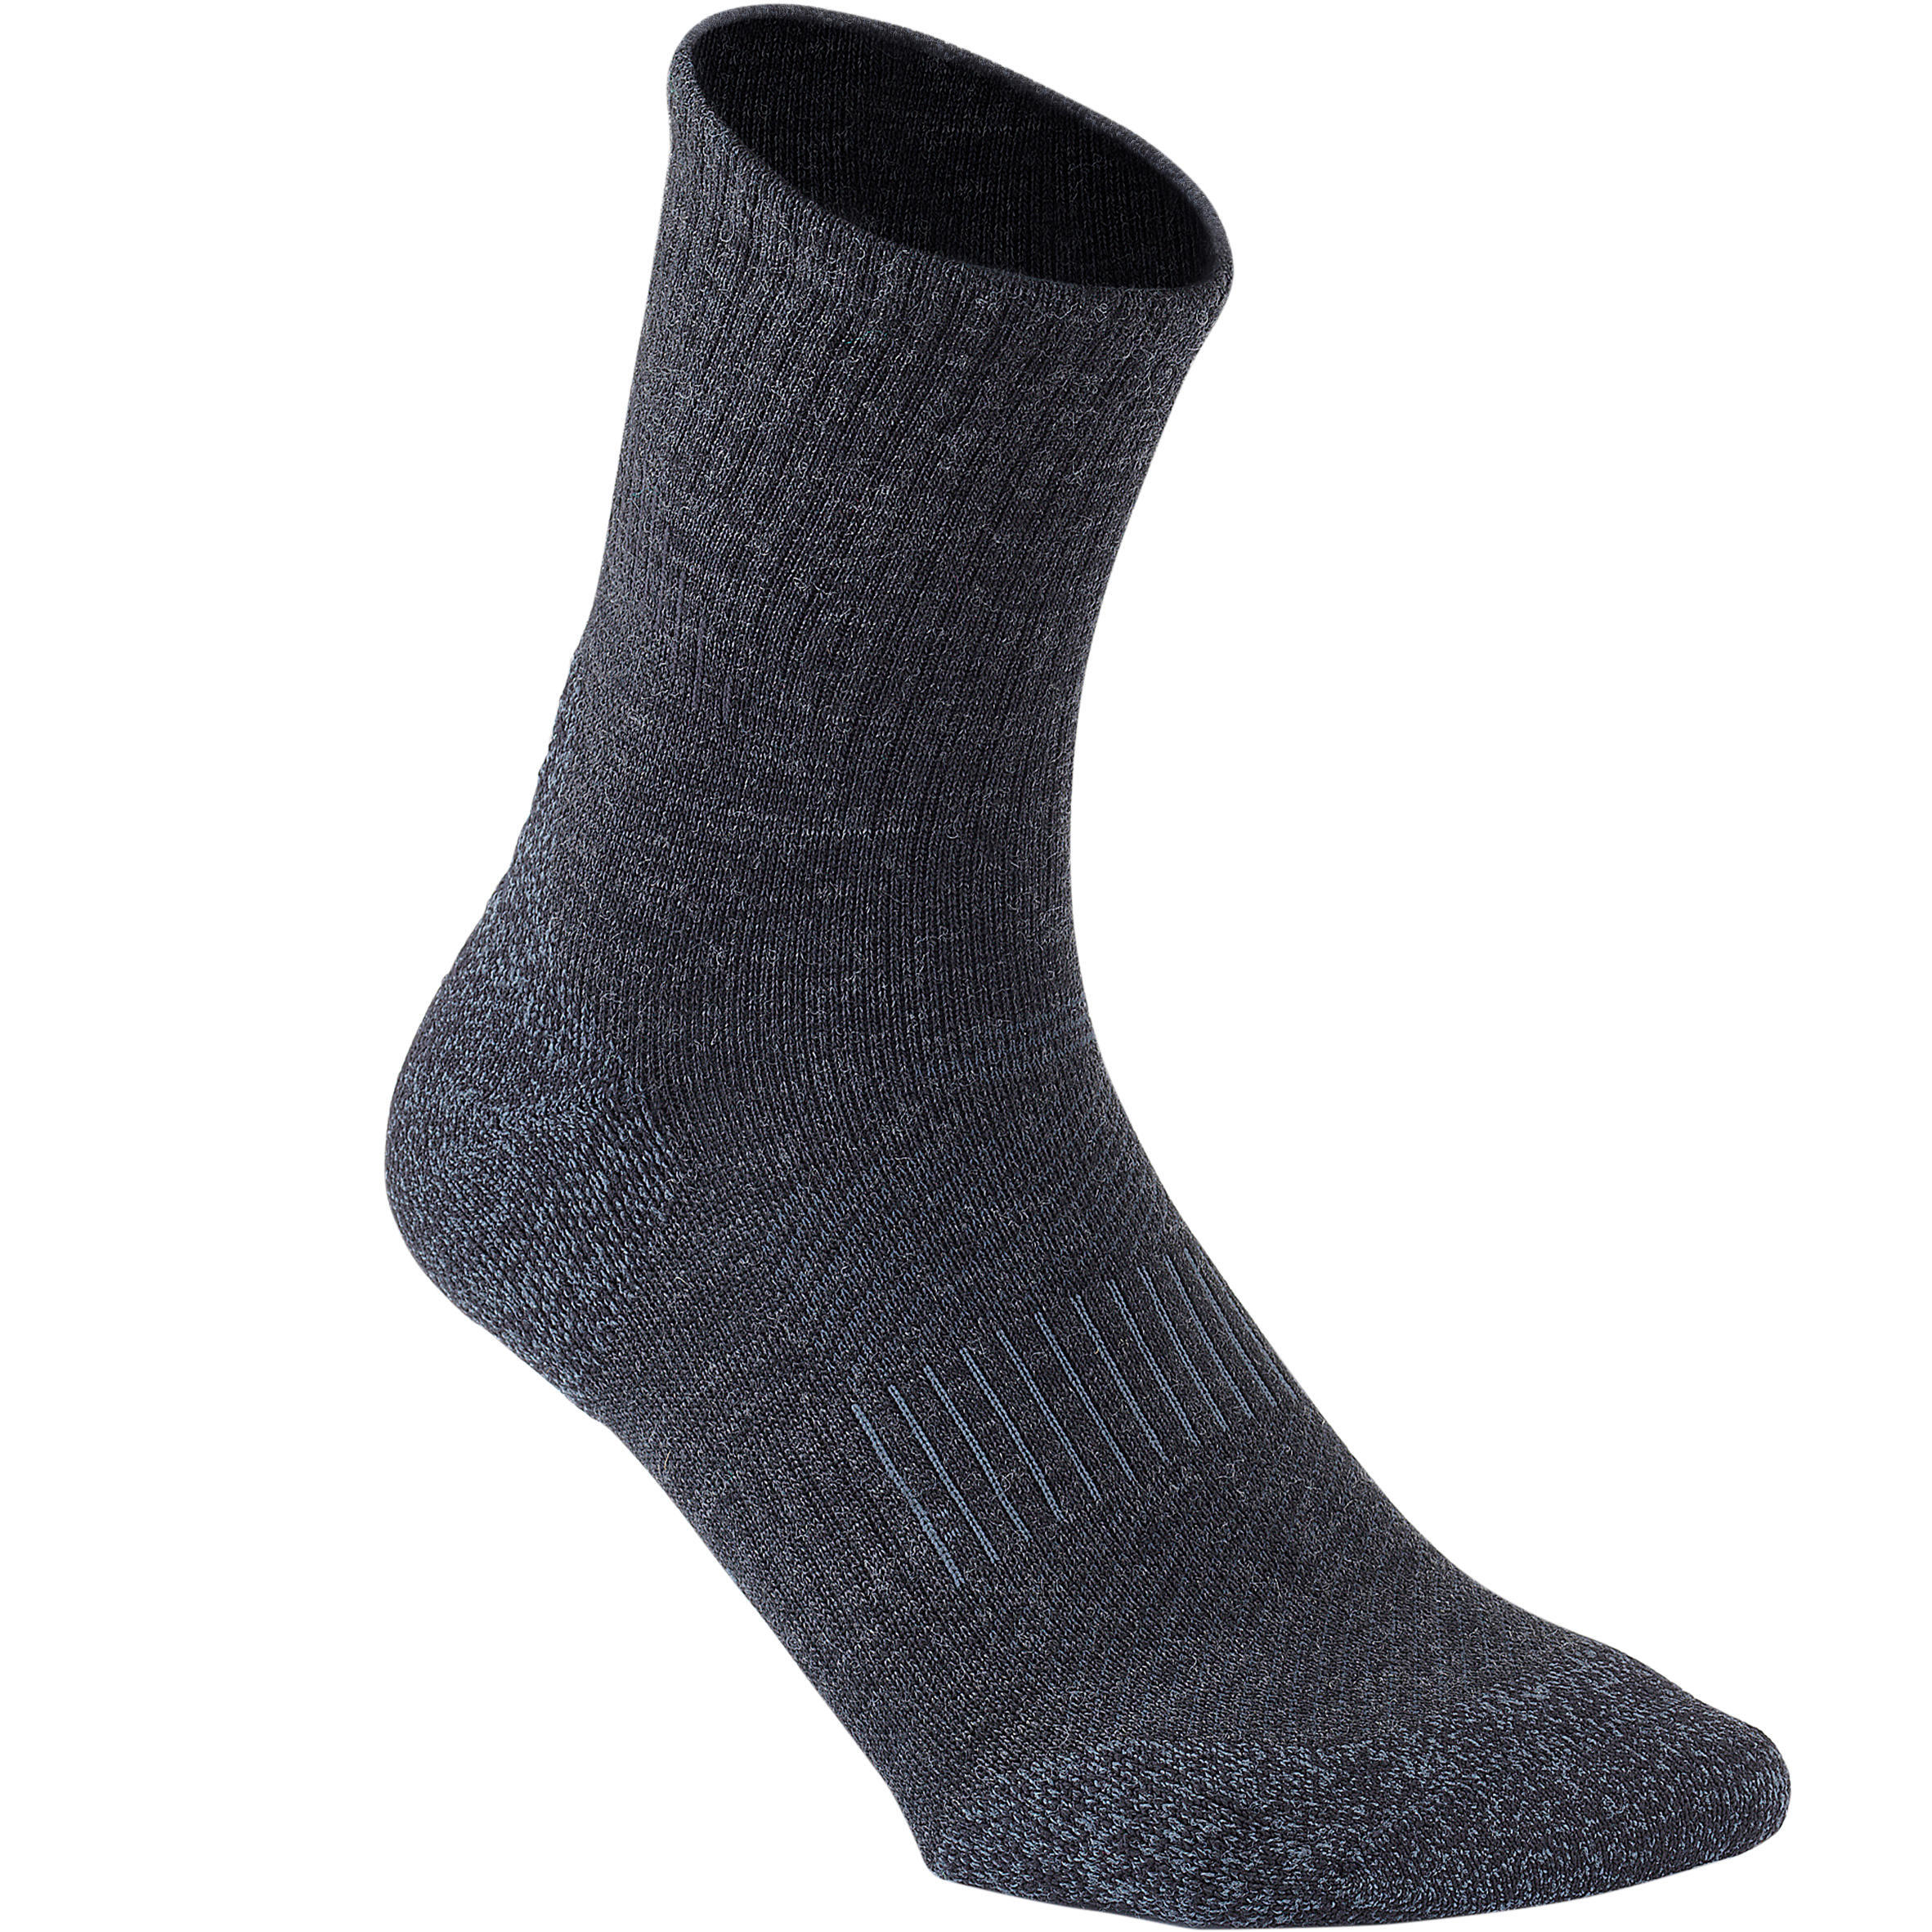 Прогулочные носки WS 580 Warm черный NEWFEEL, черный/угольно-серый